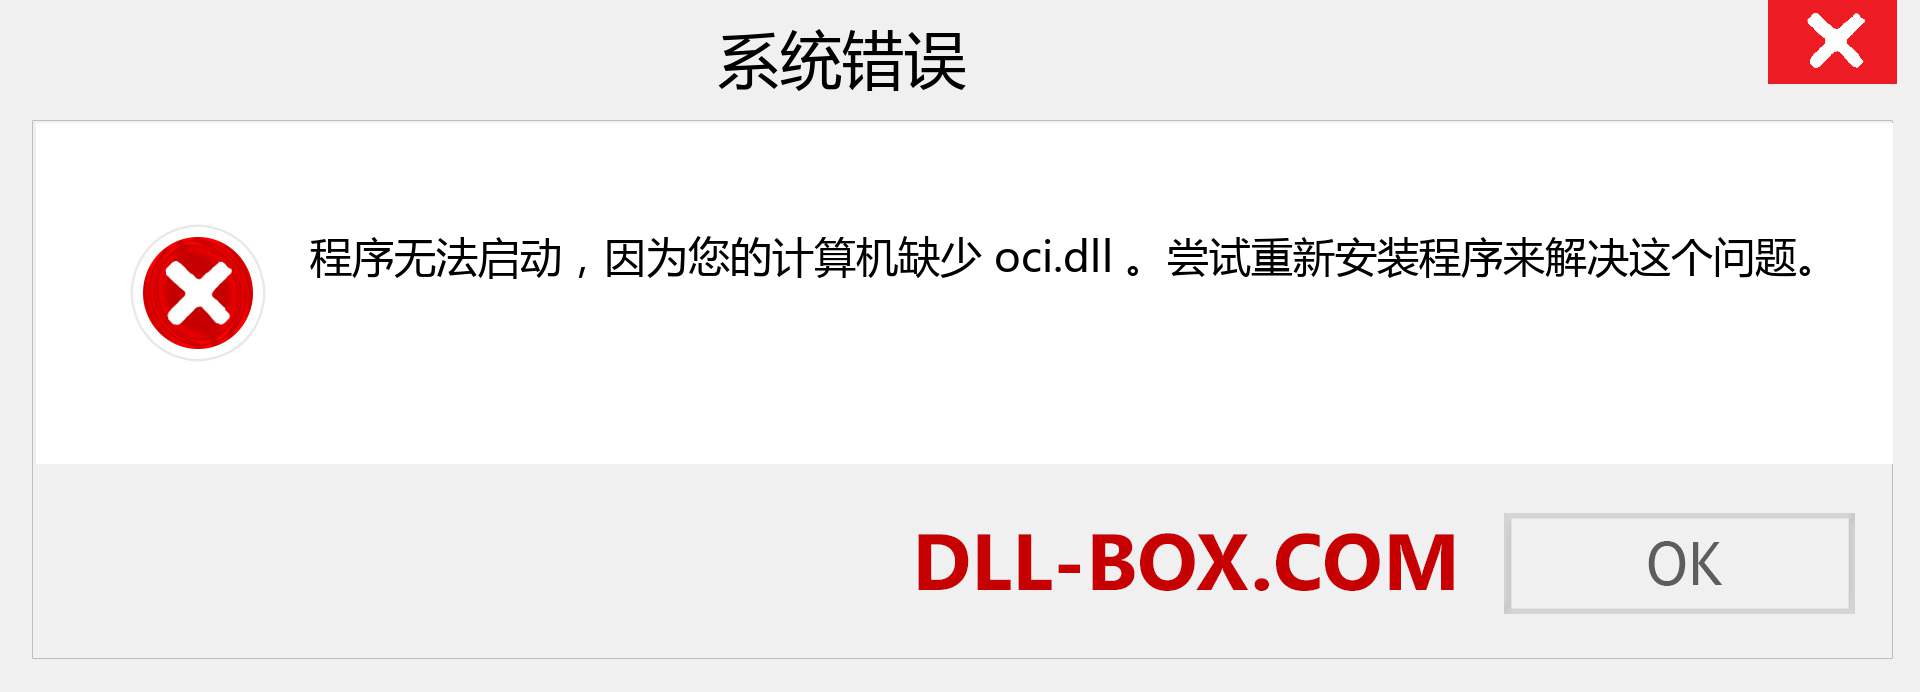 oci.dll 文件丢失？。 适用于 Windows 7、8、10 的下载 - 修复 Windows、照片、图像上的 oci dll 丢失错误